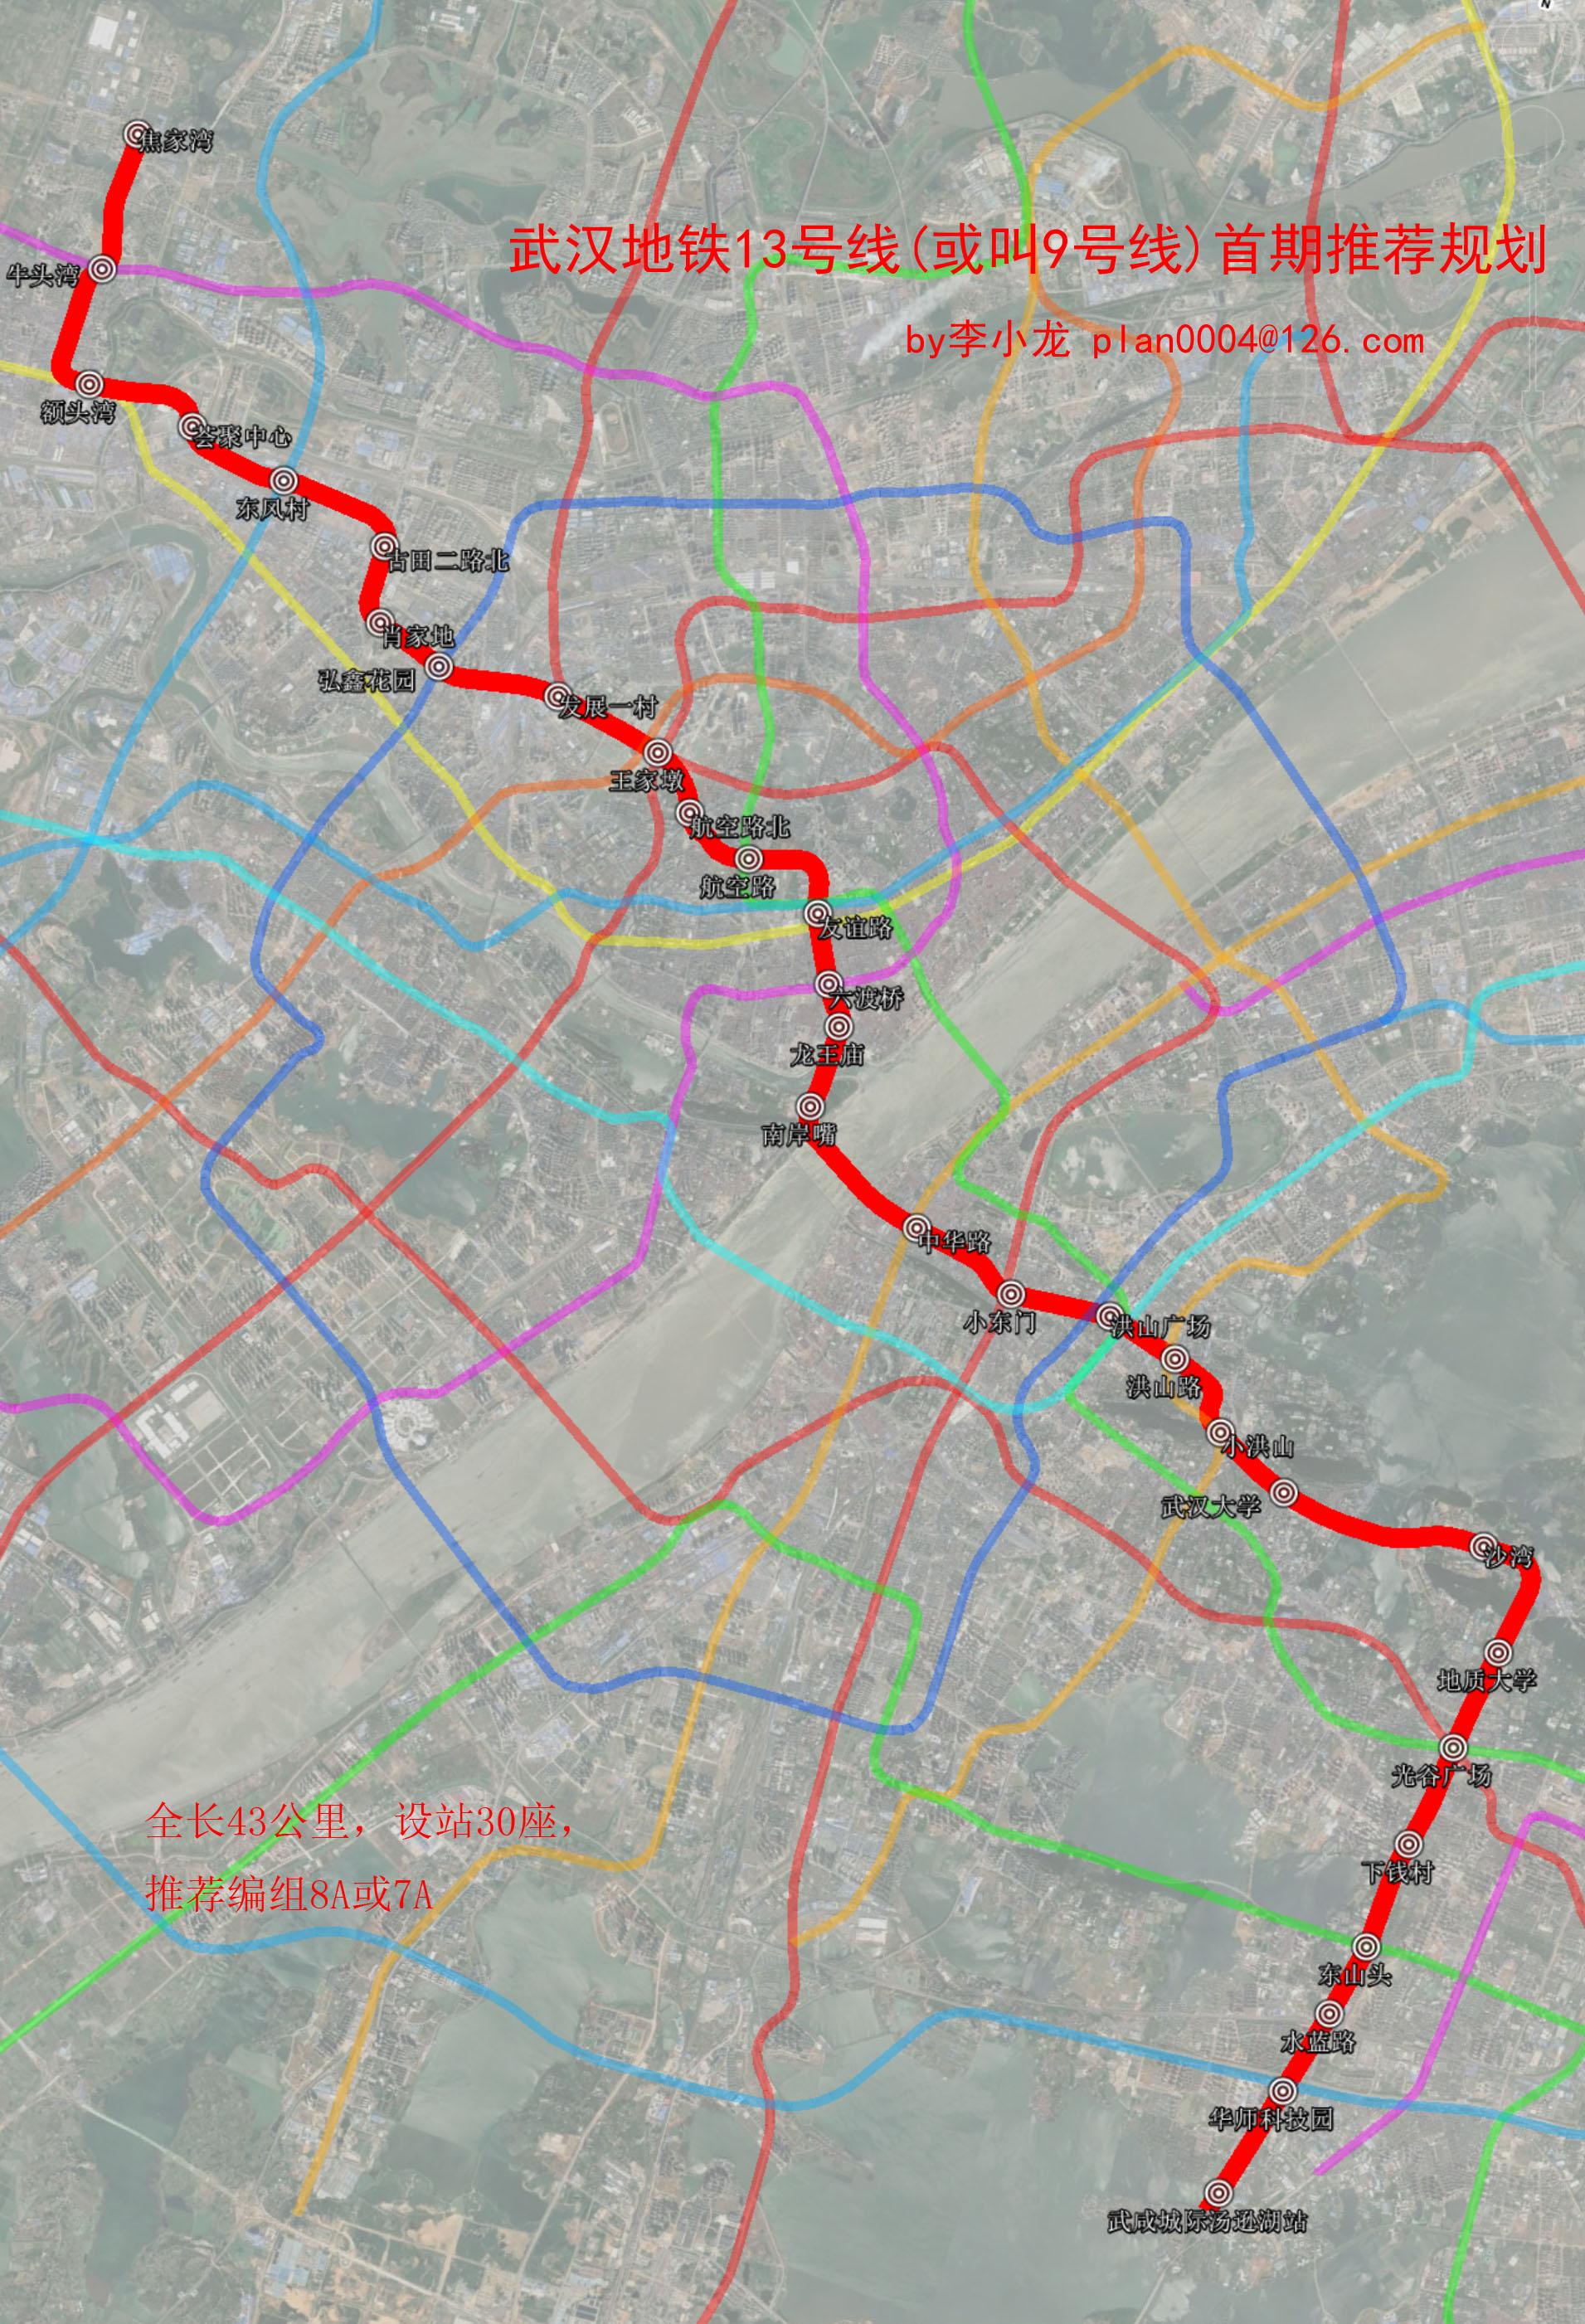 武汉地铁13号线或叫9号线李小龙版本规划进一步说明及推荐站点设置